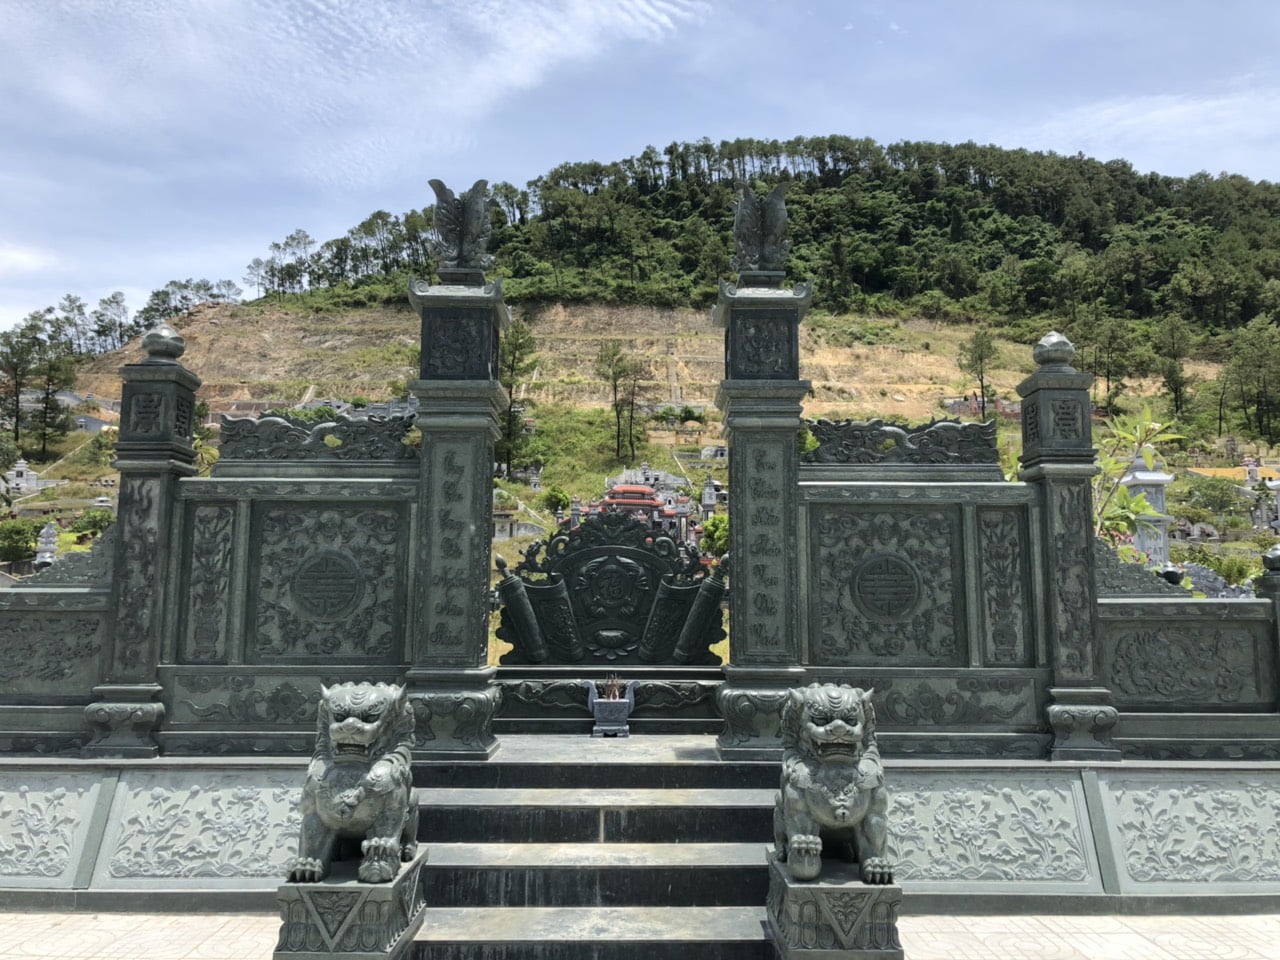 Xây lăng mộ đá gia tộc thiết kế chuẩn phong thủy tại Ninh Bình